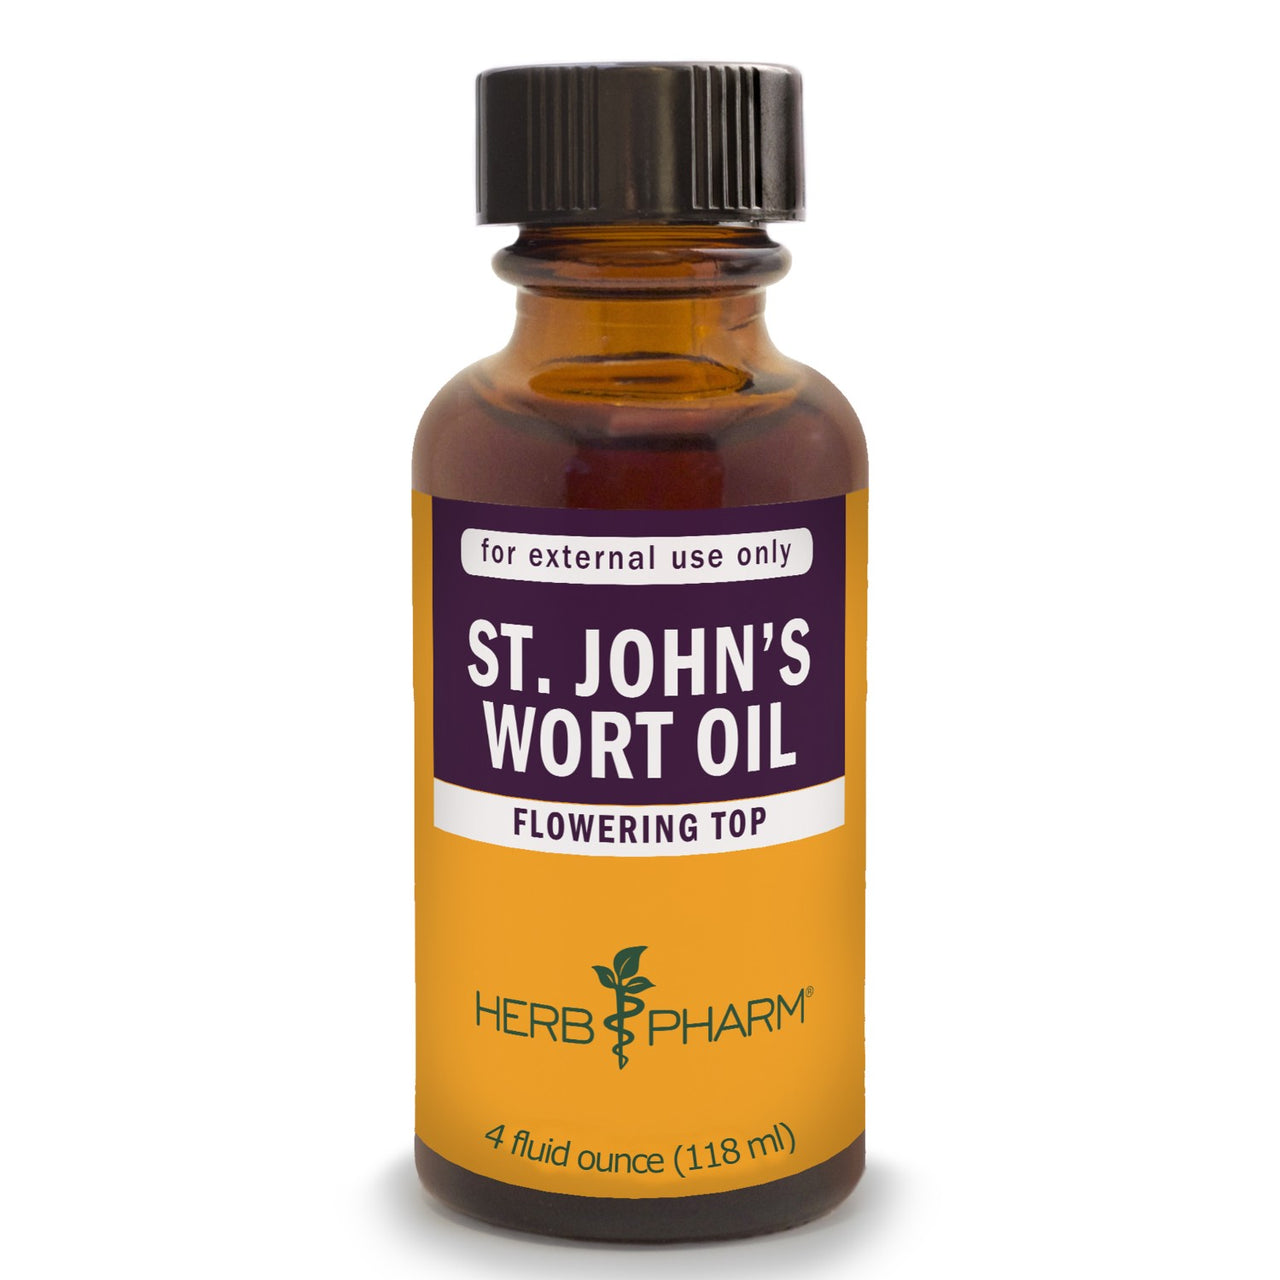 St. John’s Wort Oil - My Village Green